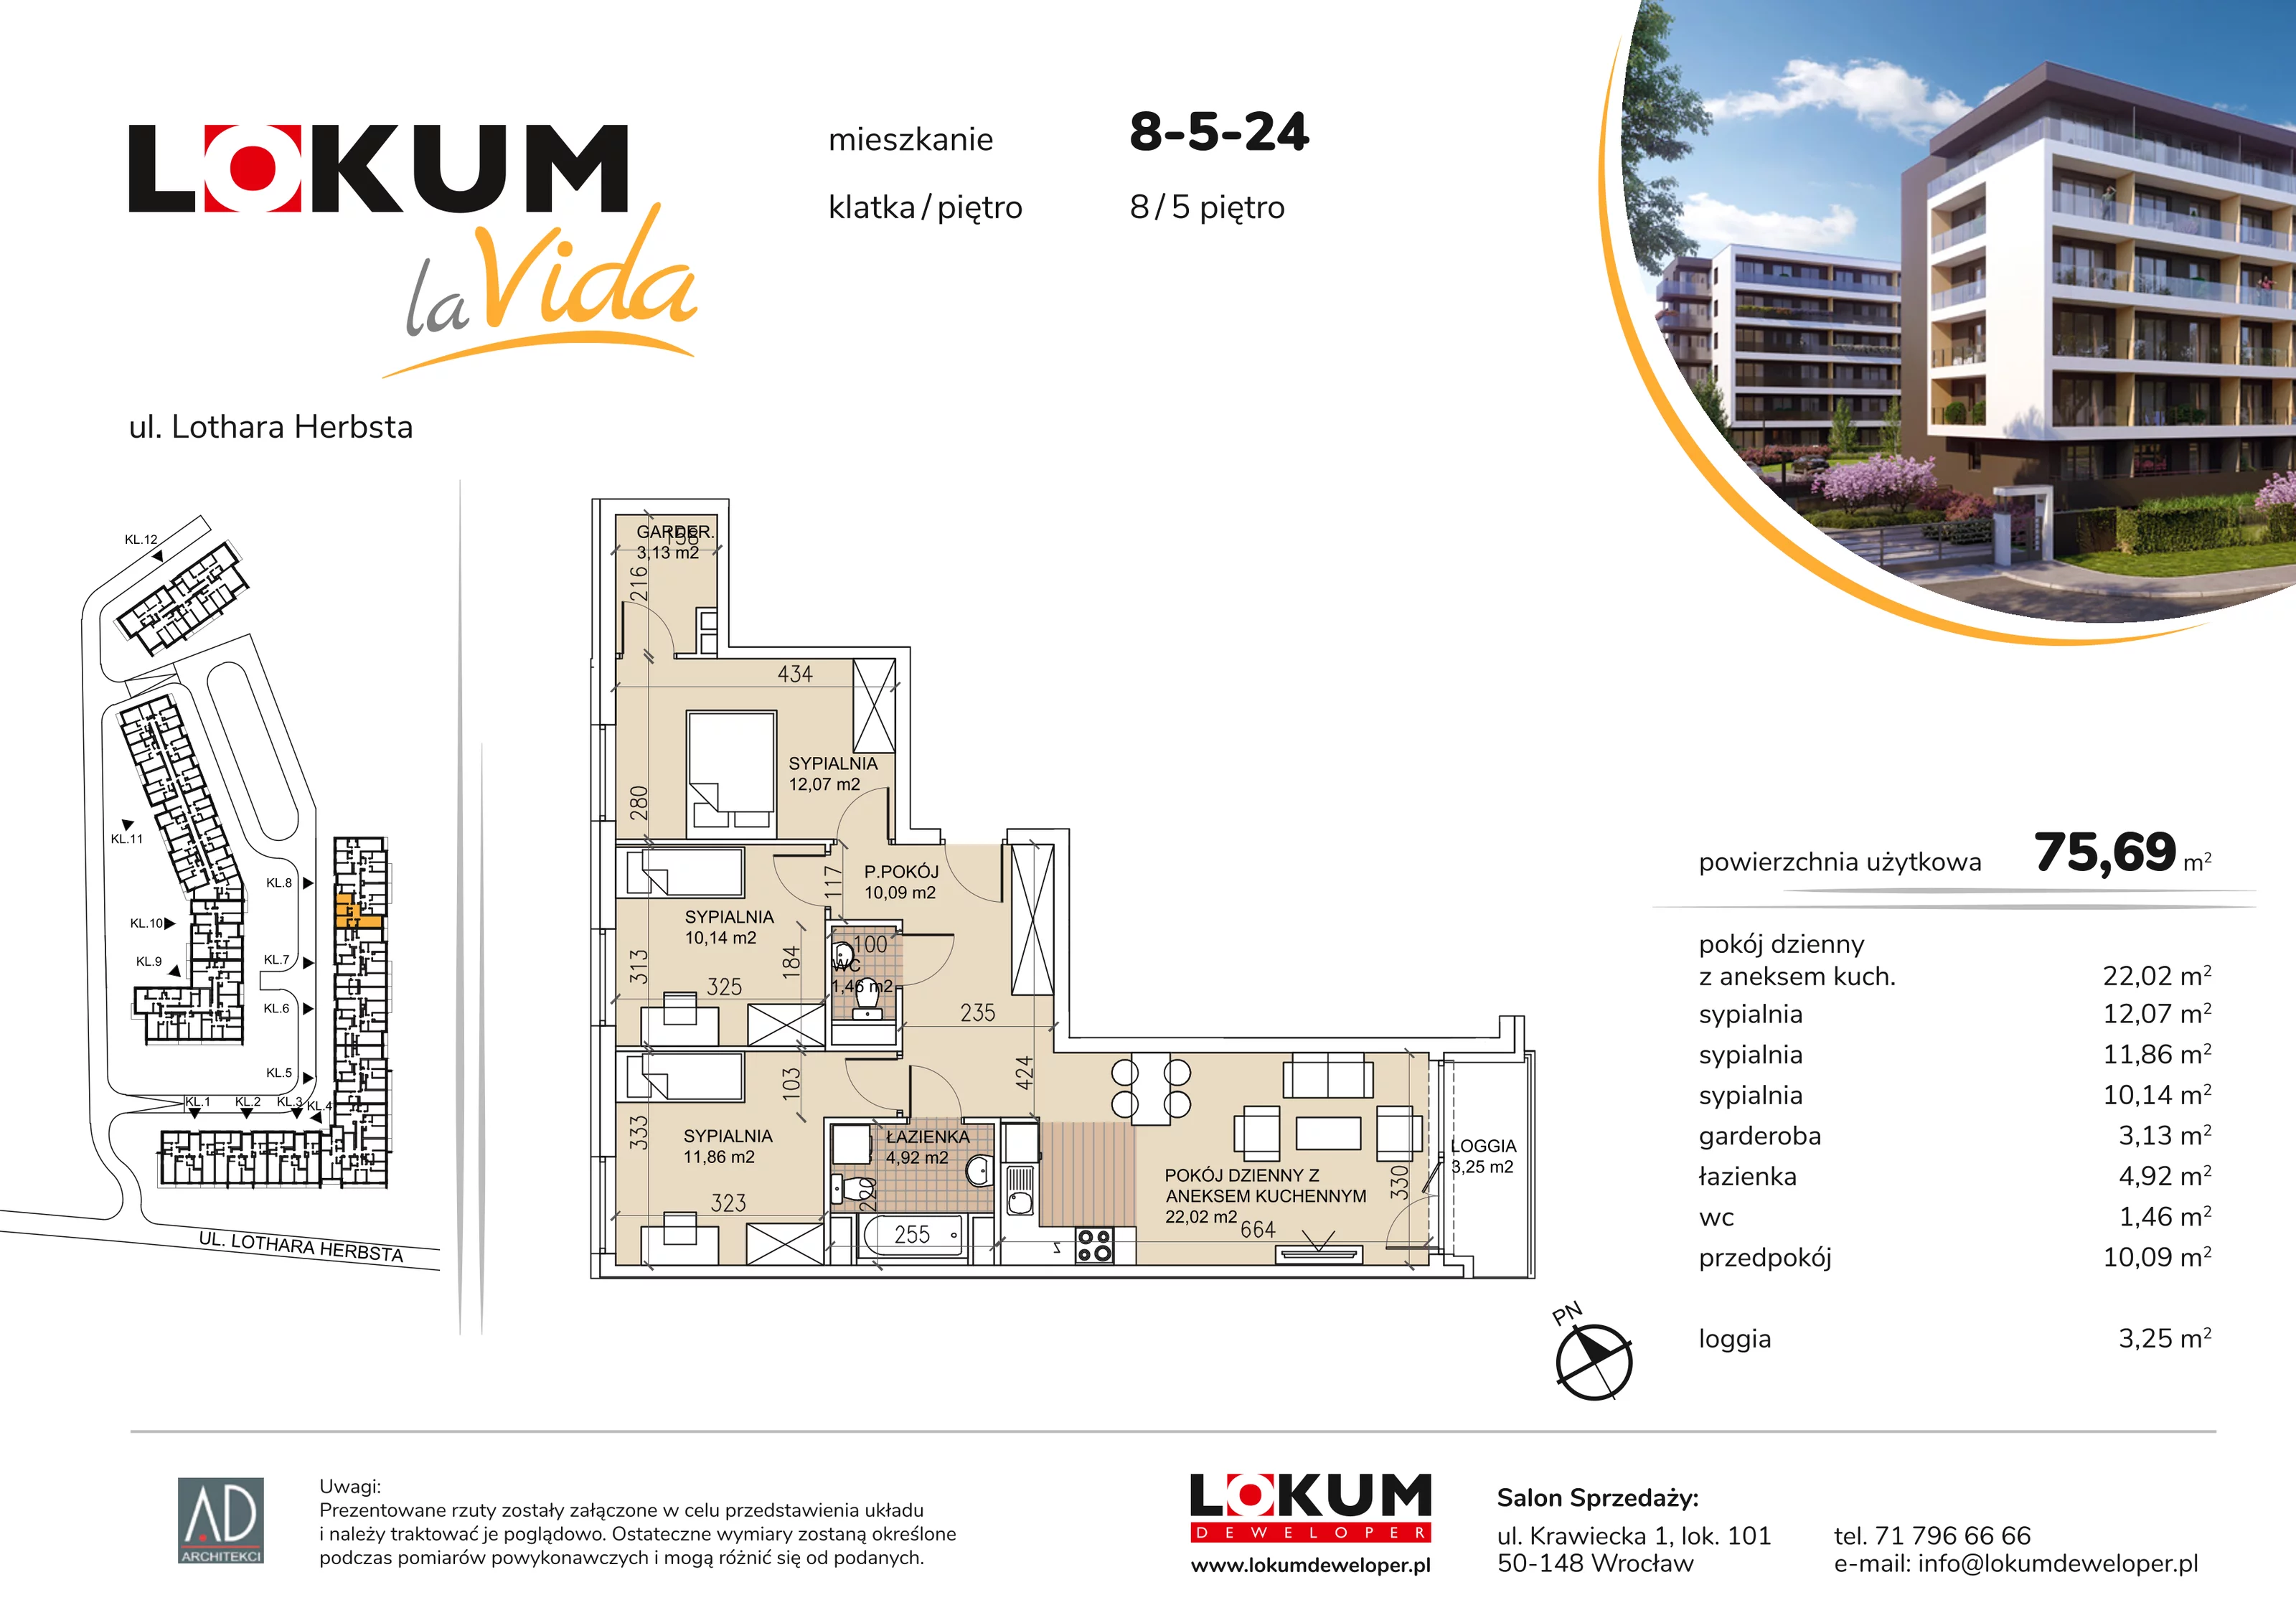 Mieszkanie 75,69 m², piętro 5, oferta nr 8-5-24, Lokum la Vida, Wrocław, Sołtysowice, ul. Lothara Herbsta